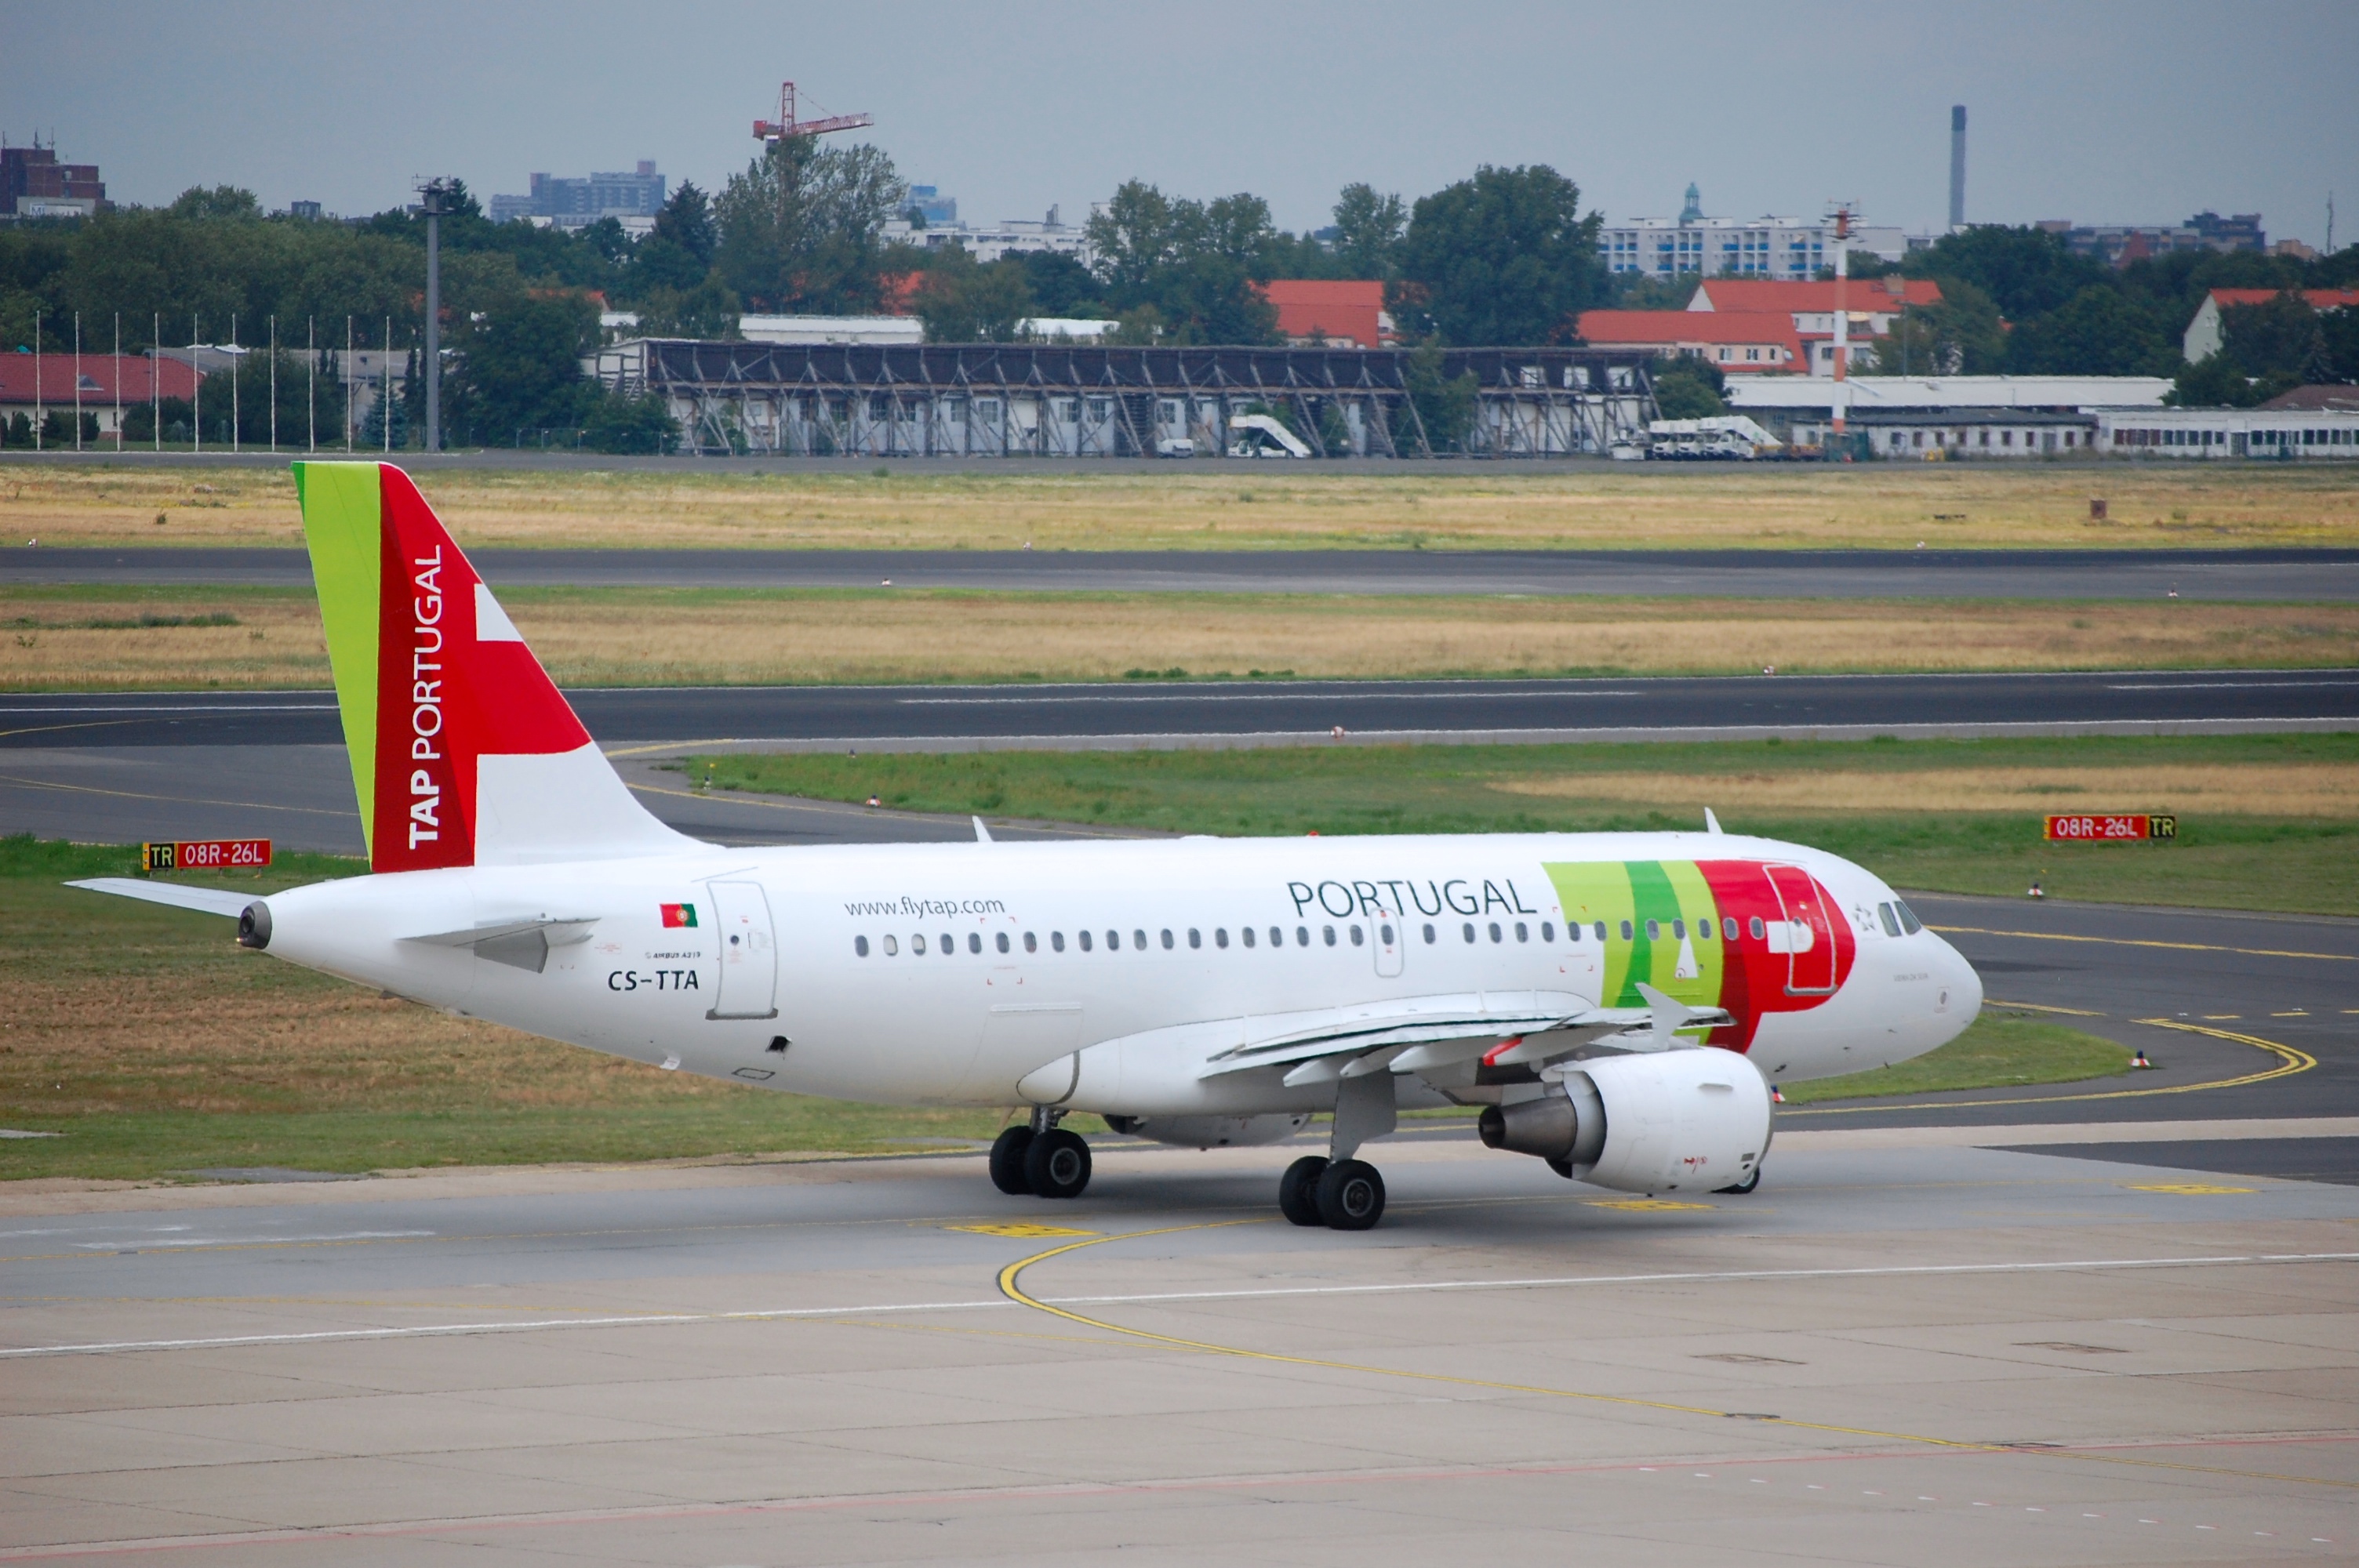 		TAP Air Portugal Flüge mit bis zu 20% Rabatt buchen!
	